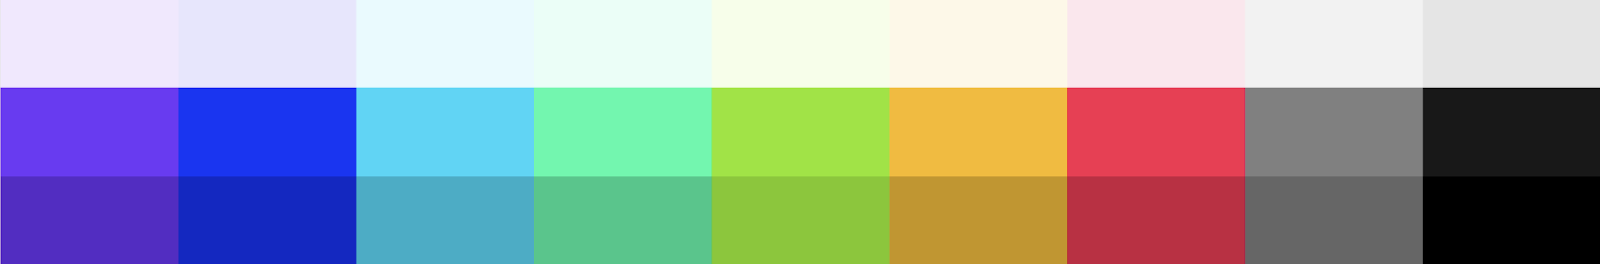 Final colour scheme